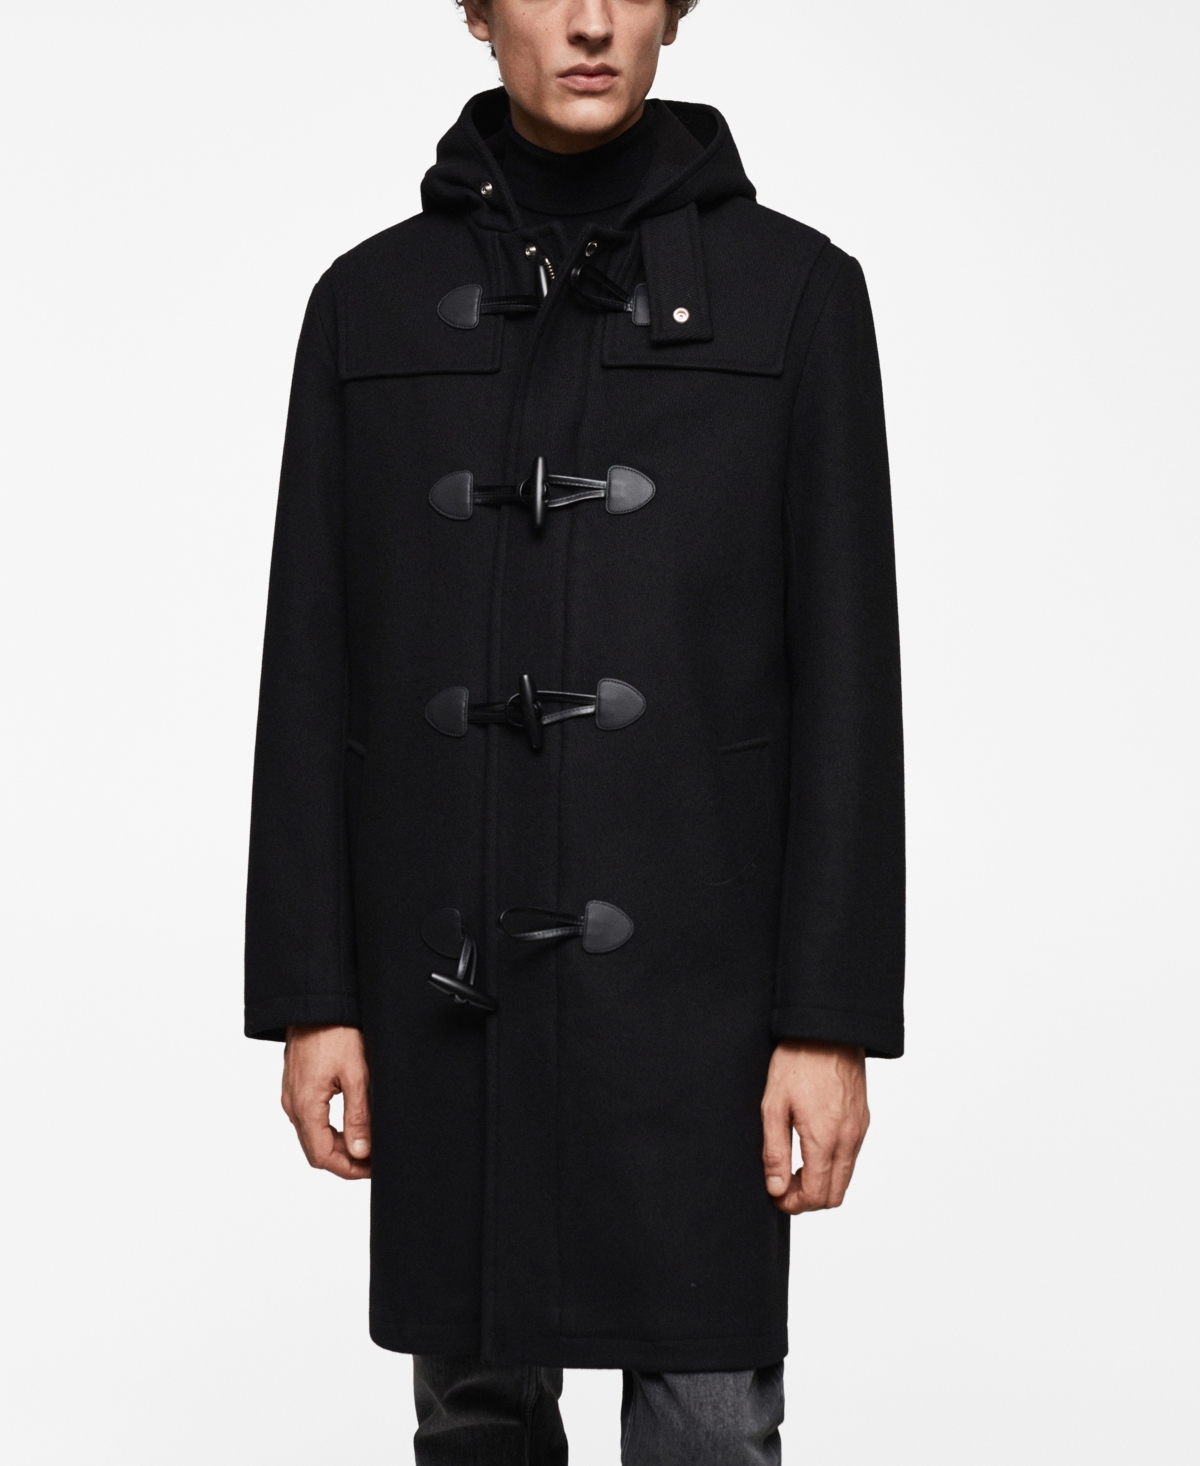 Men's Wool Hooded Coat - Black